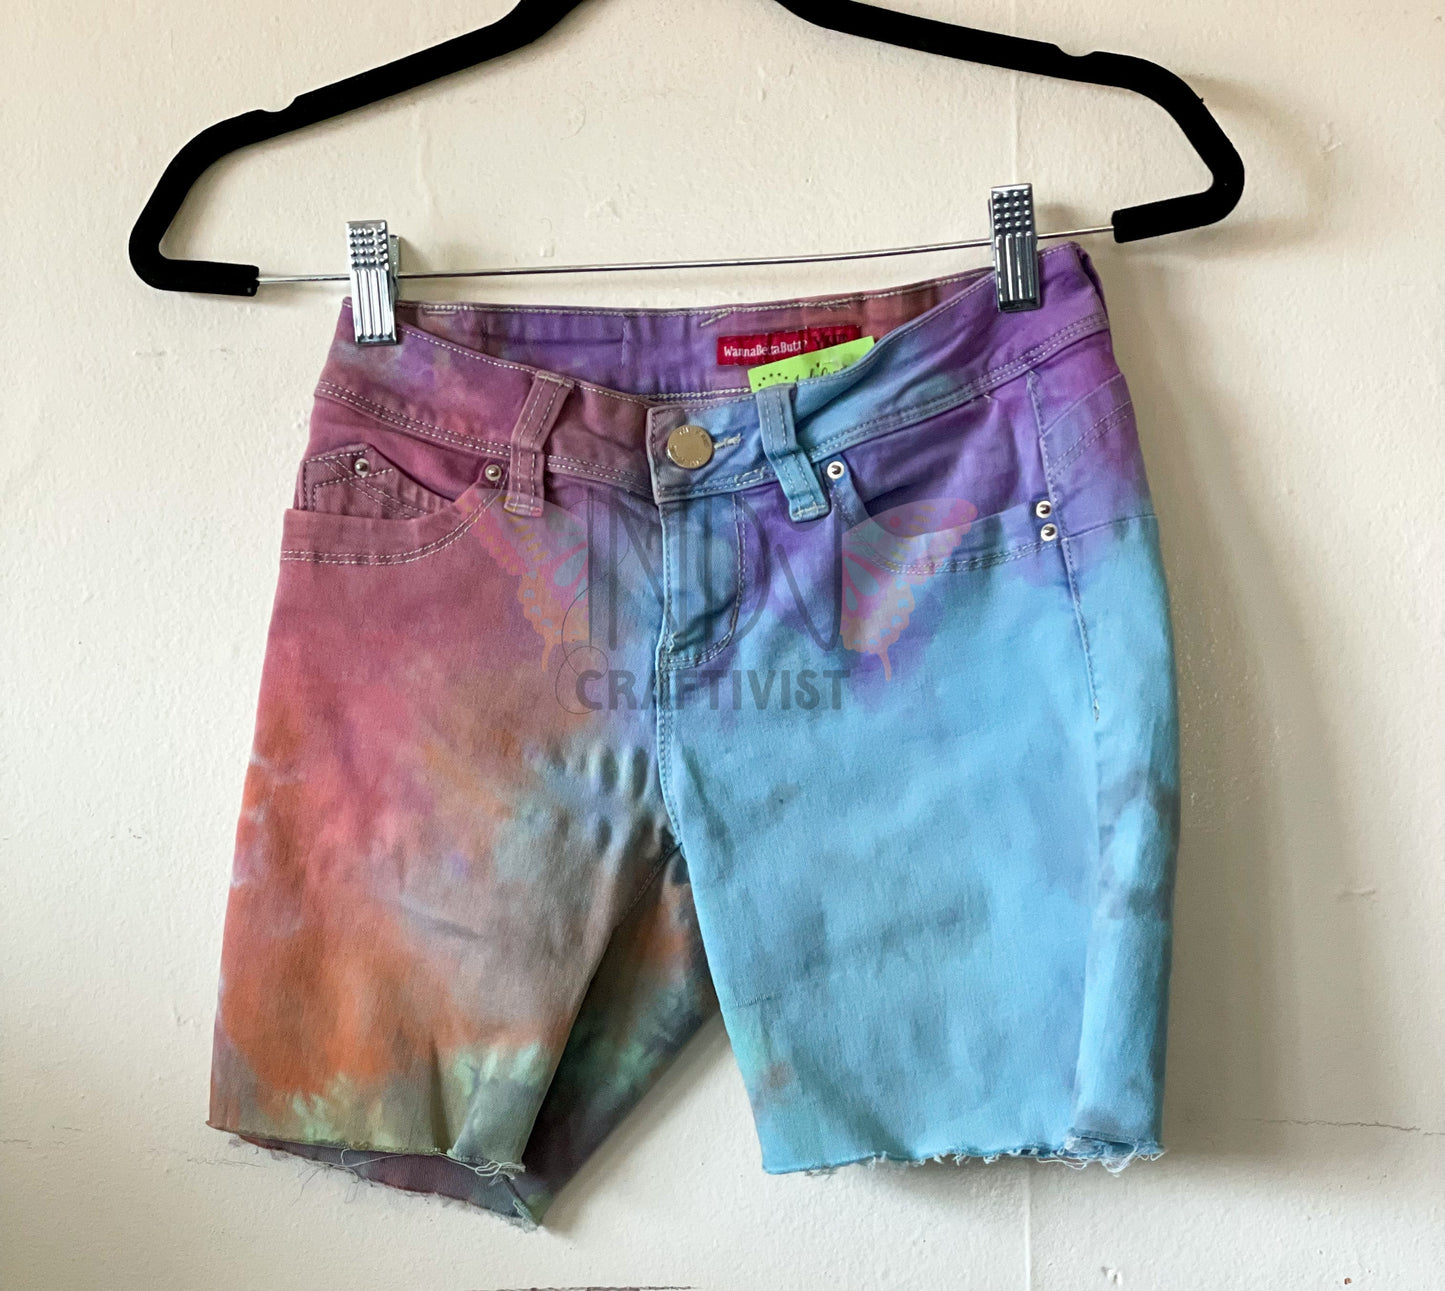 Pastel Rainbow Upcycled Tie Dyed Denim Shorts